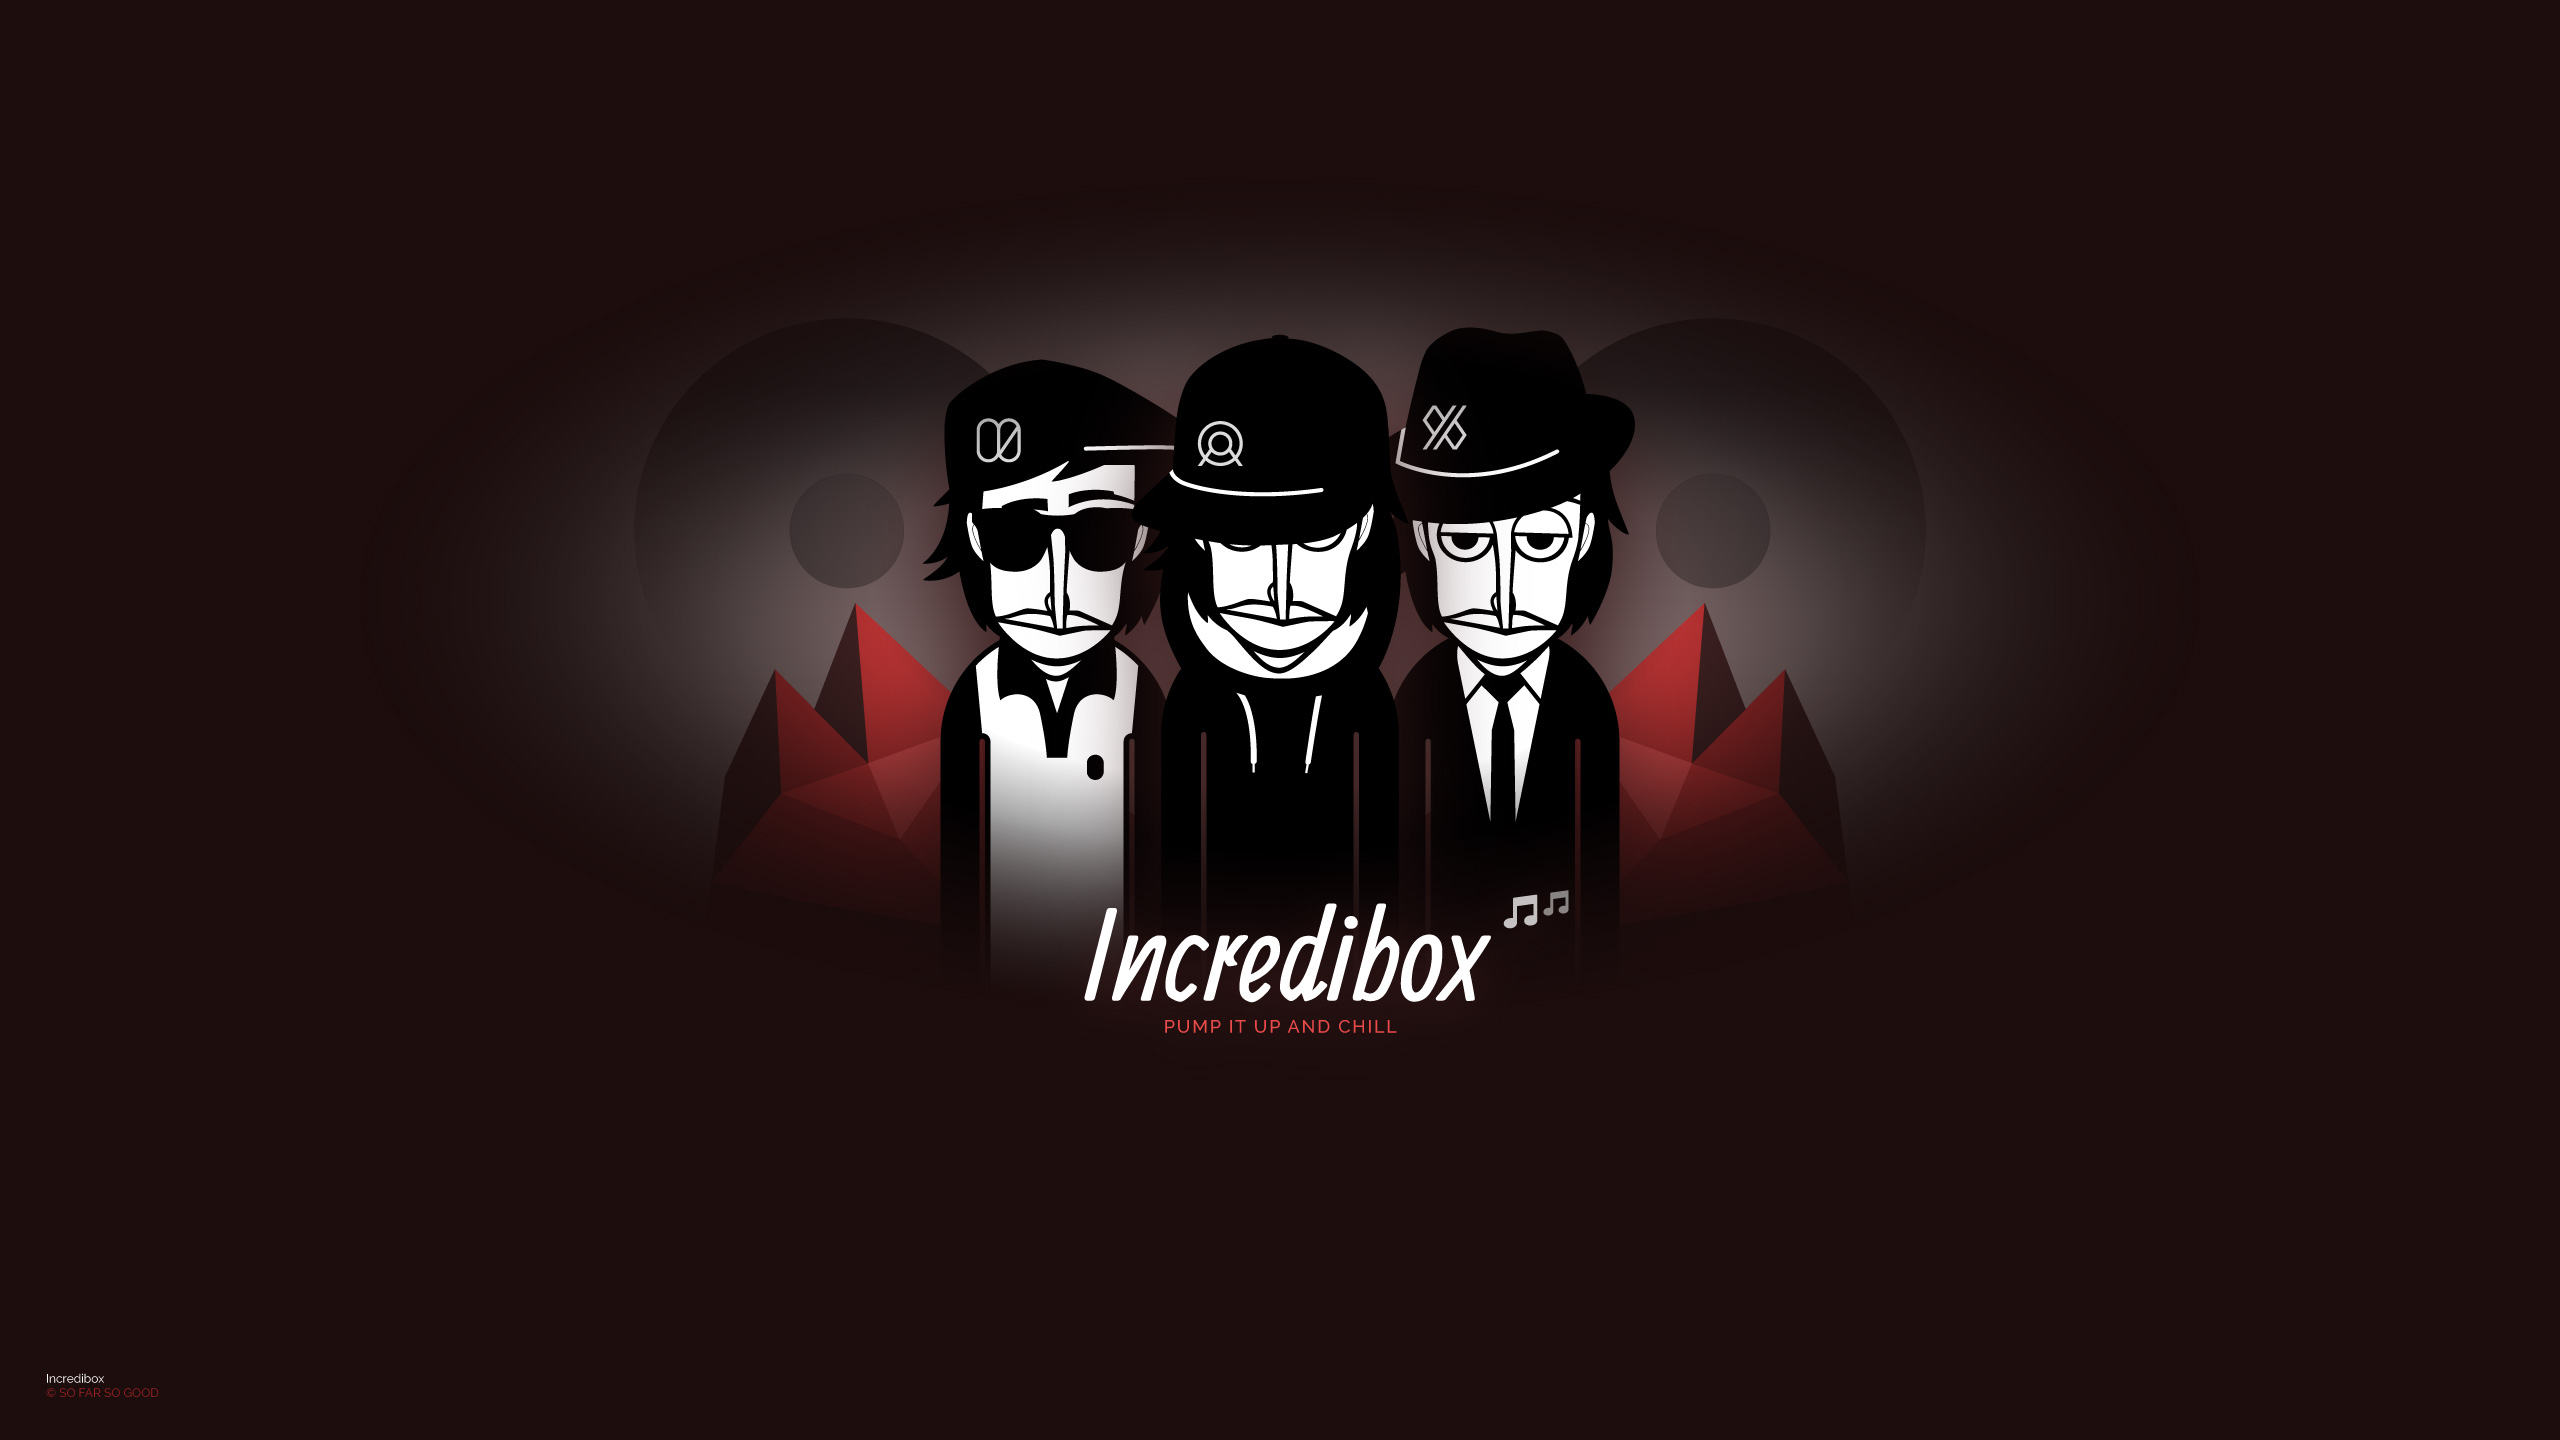 Incredibox Music Games Posters Gambling 2560x1440